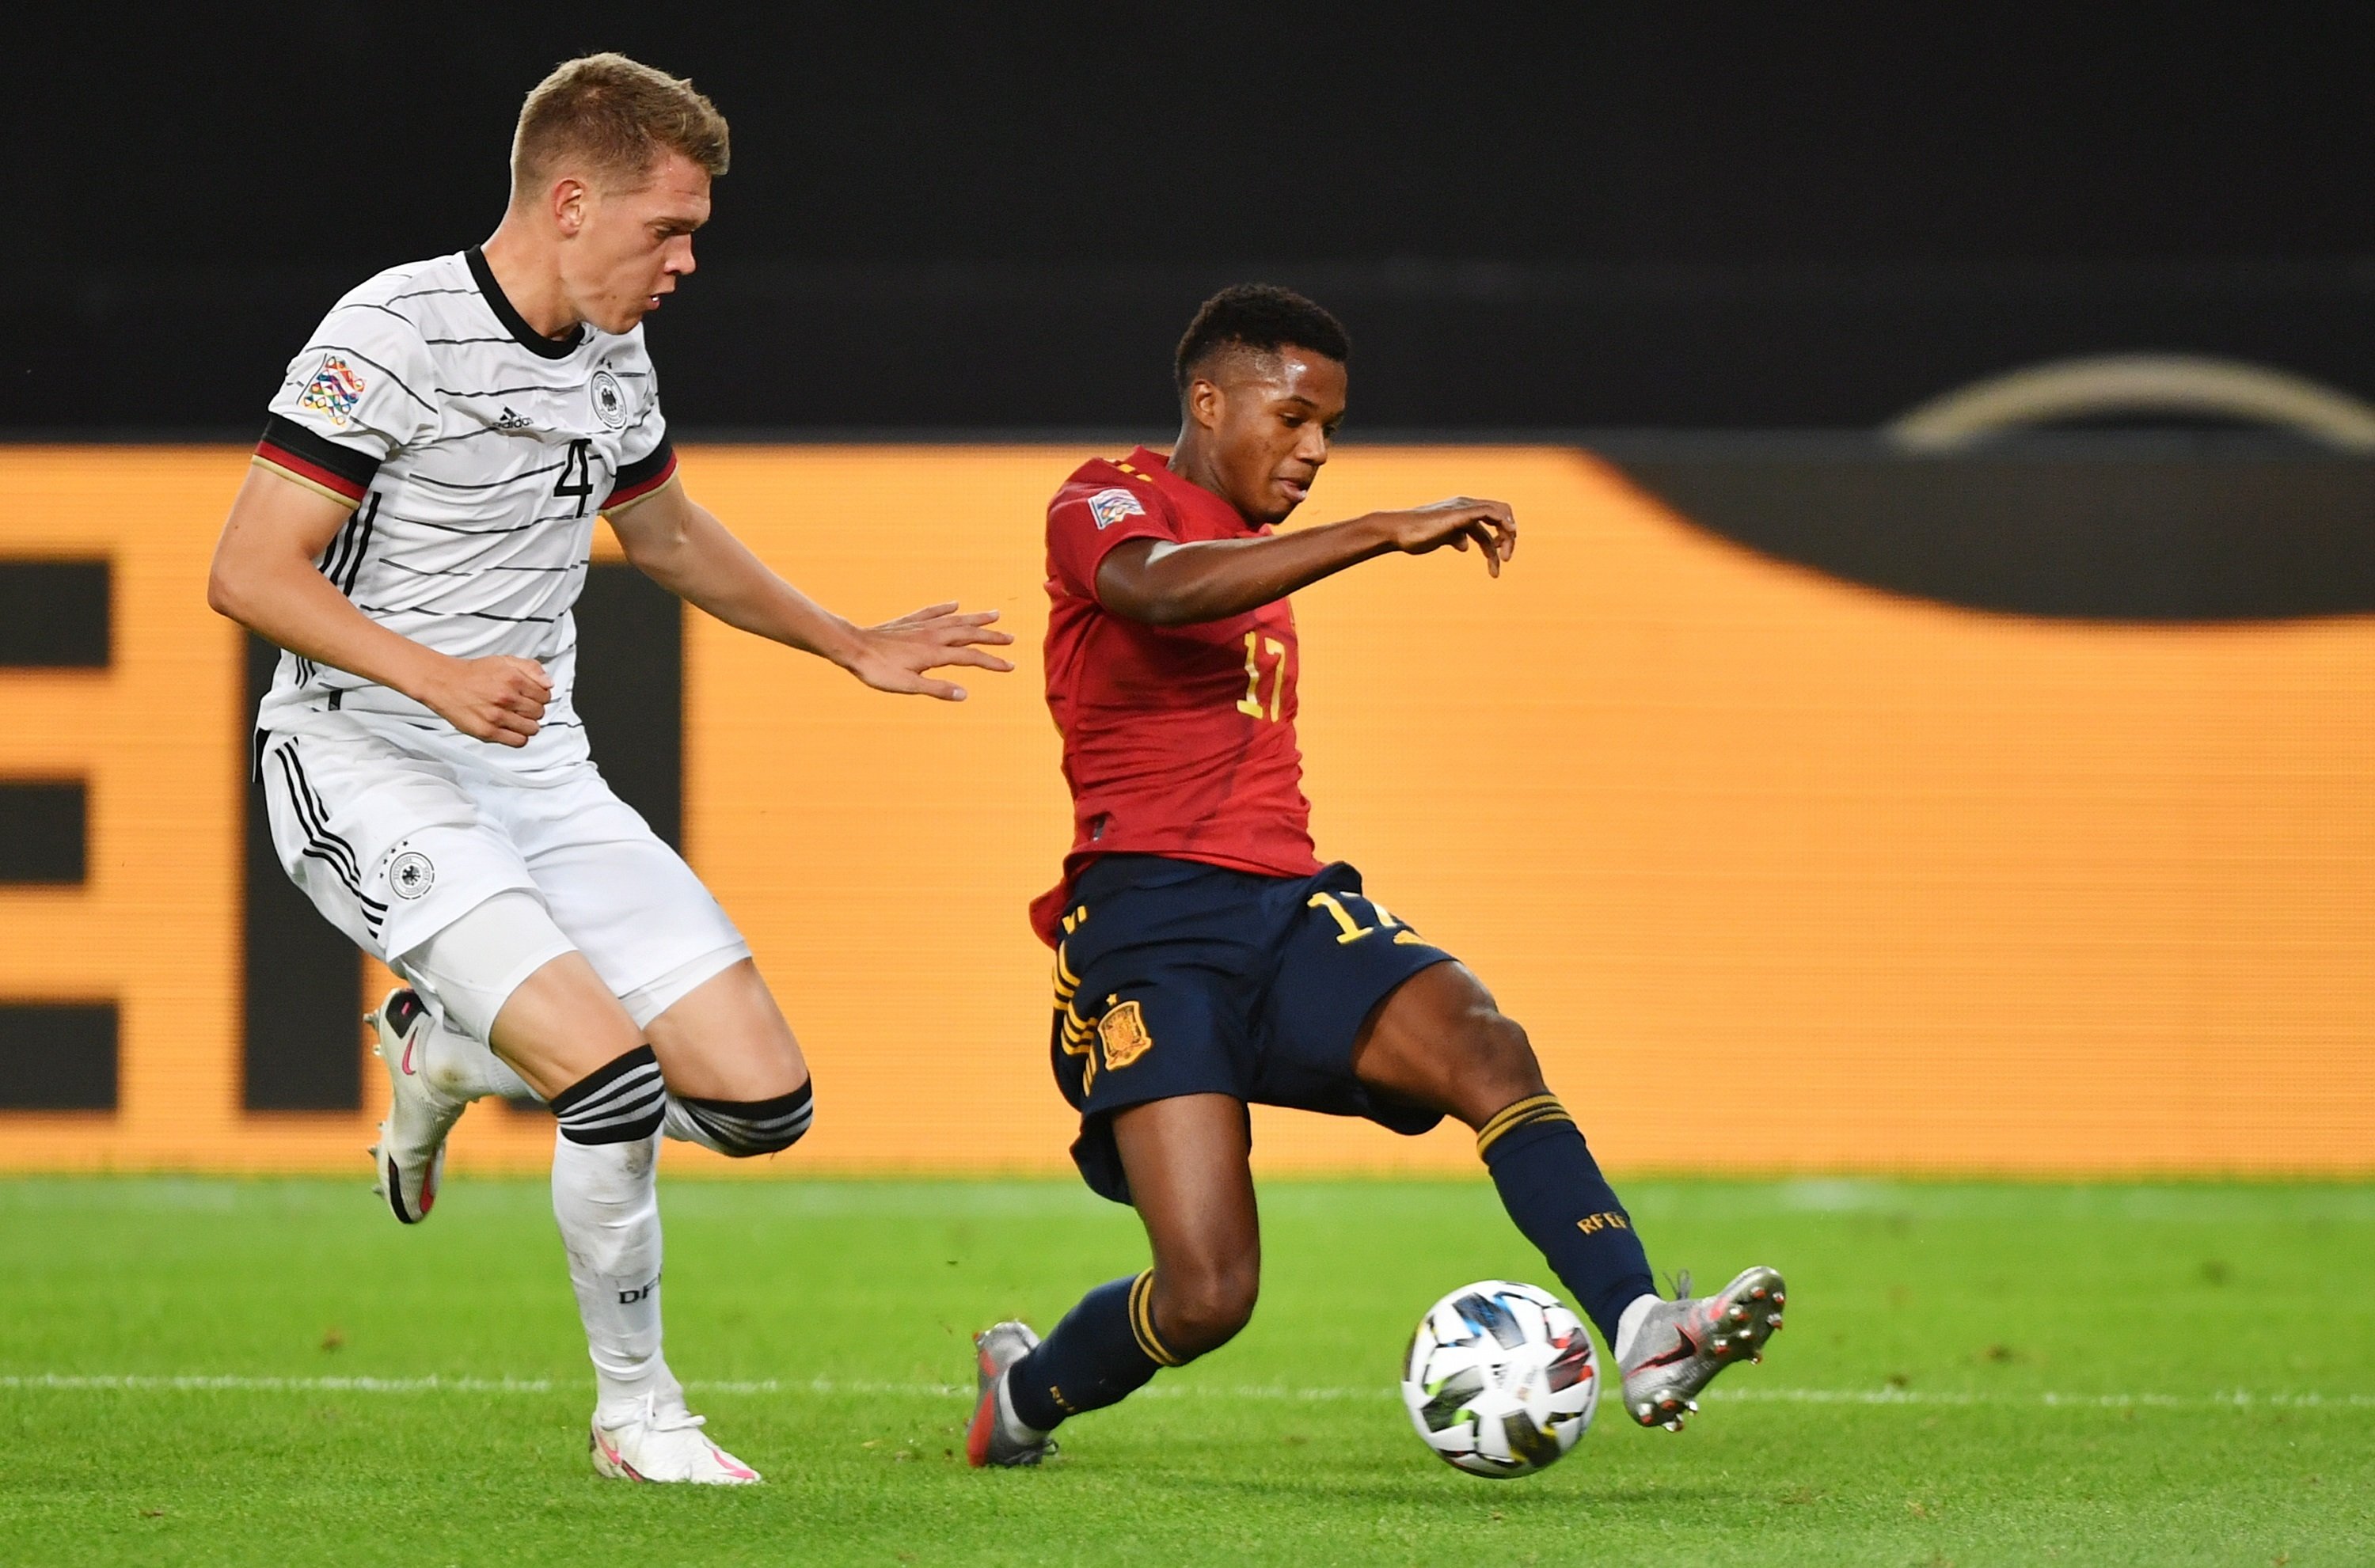 Empate de última hora de España contra Alemania en el debut de Ansu Fati (1-1)